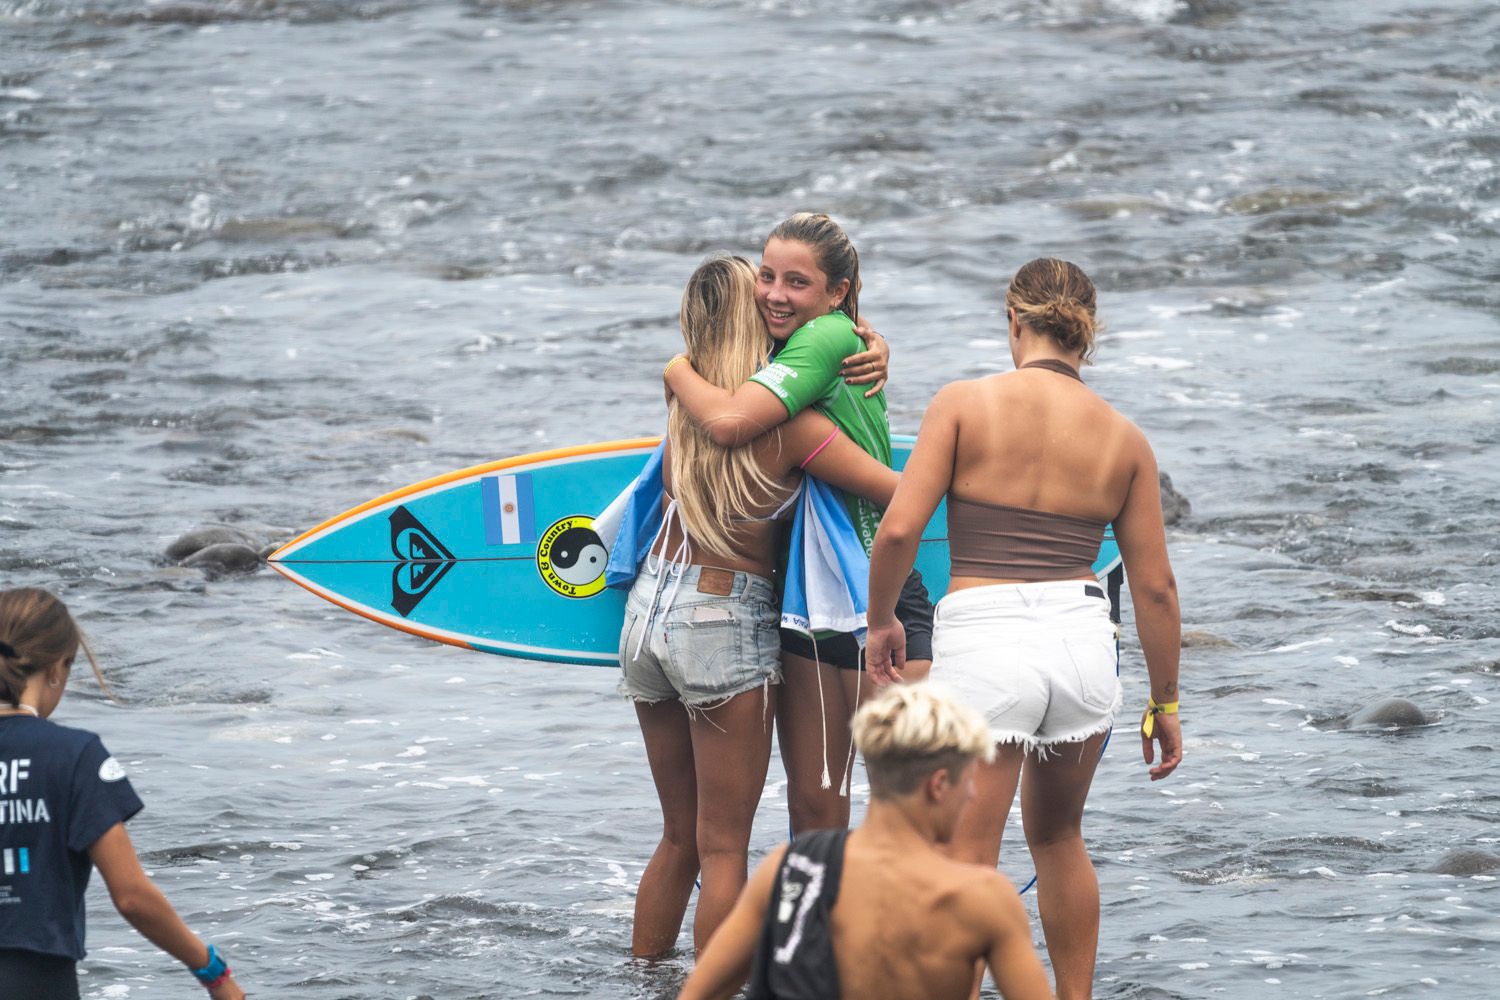 Maia Radziunas saludada al salir del agua por sus compañeras (Foto: ISA)